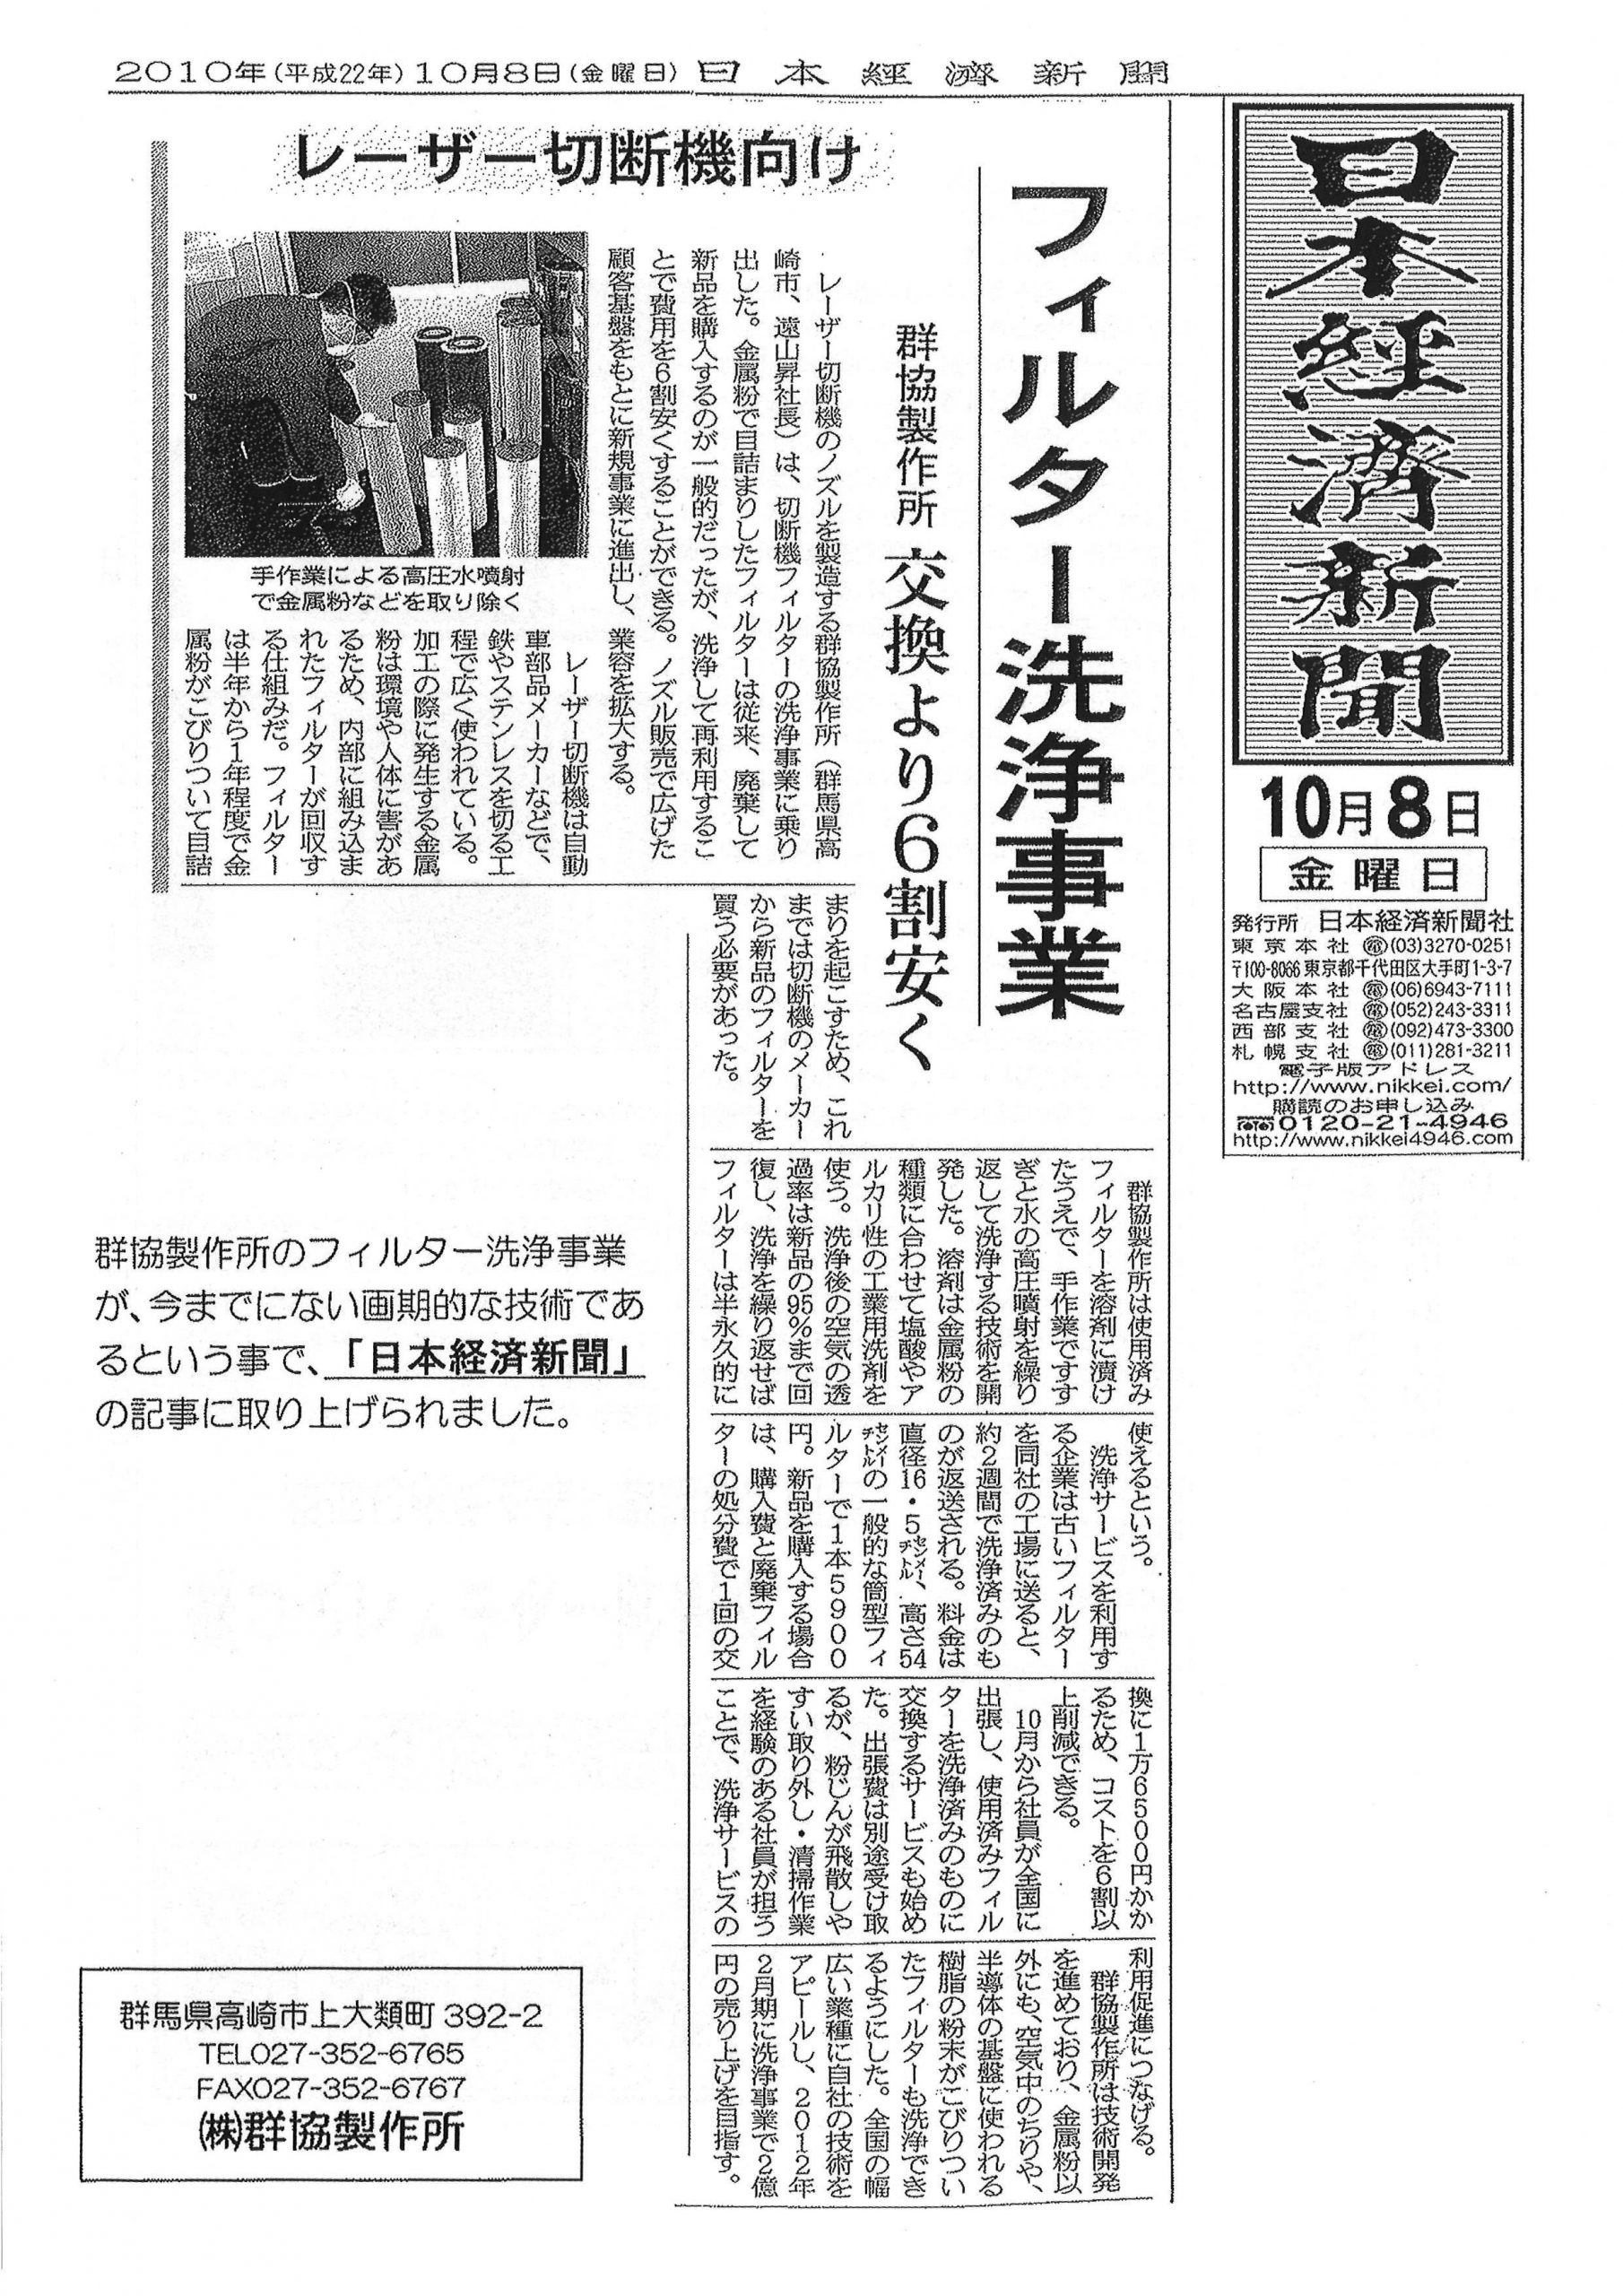 フィルター洗浄事業が日経新聞の記事に取り上げられました。